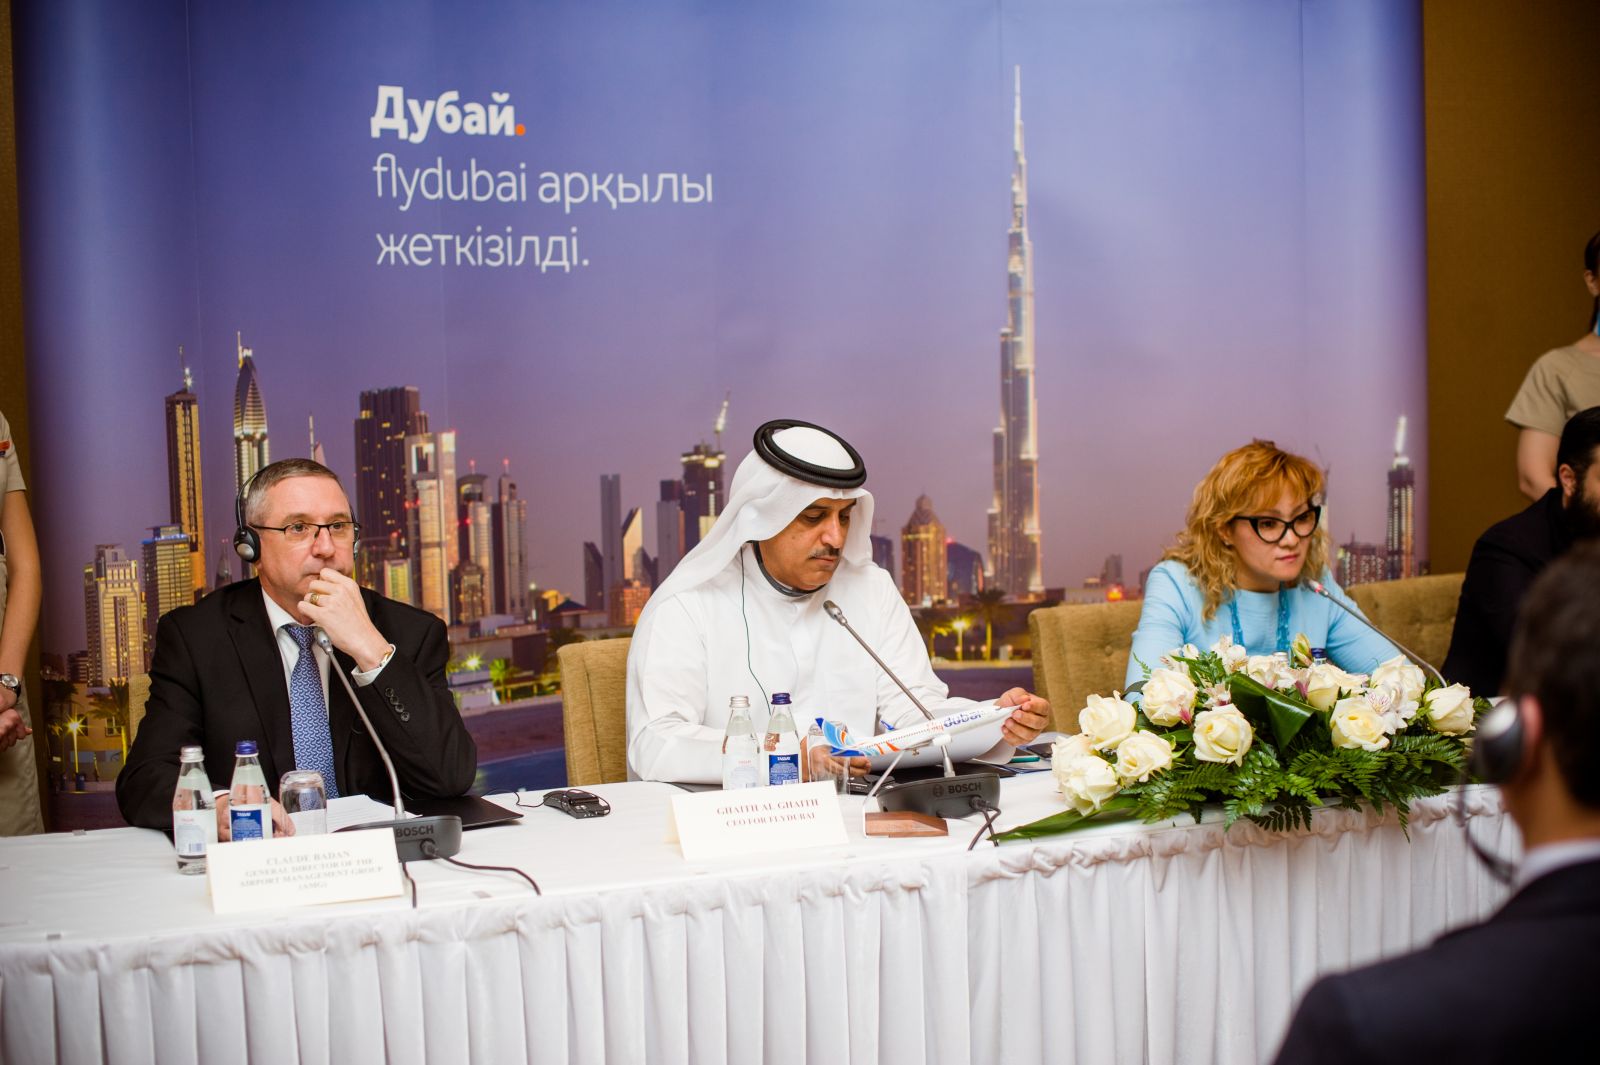 Авиакомпания flydubai объявляет о запуске рейсов в Астану